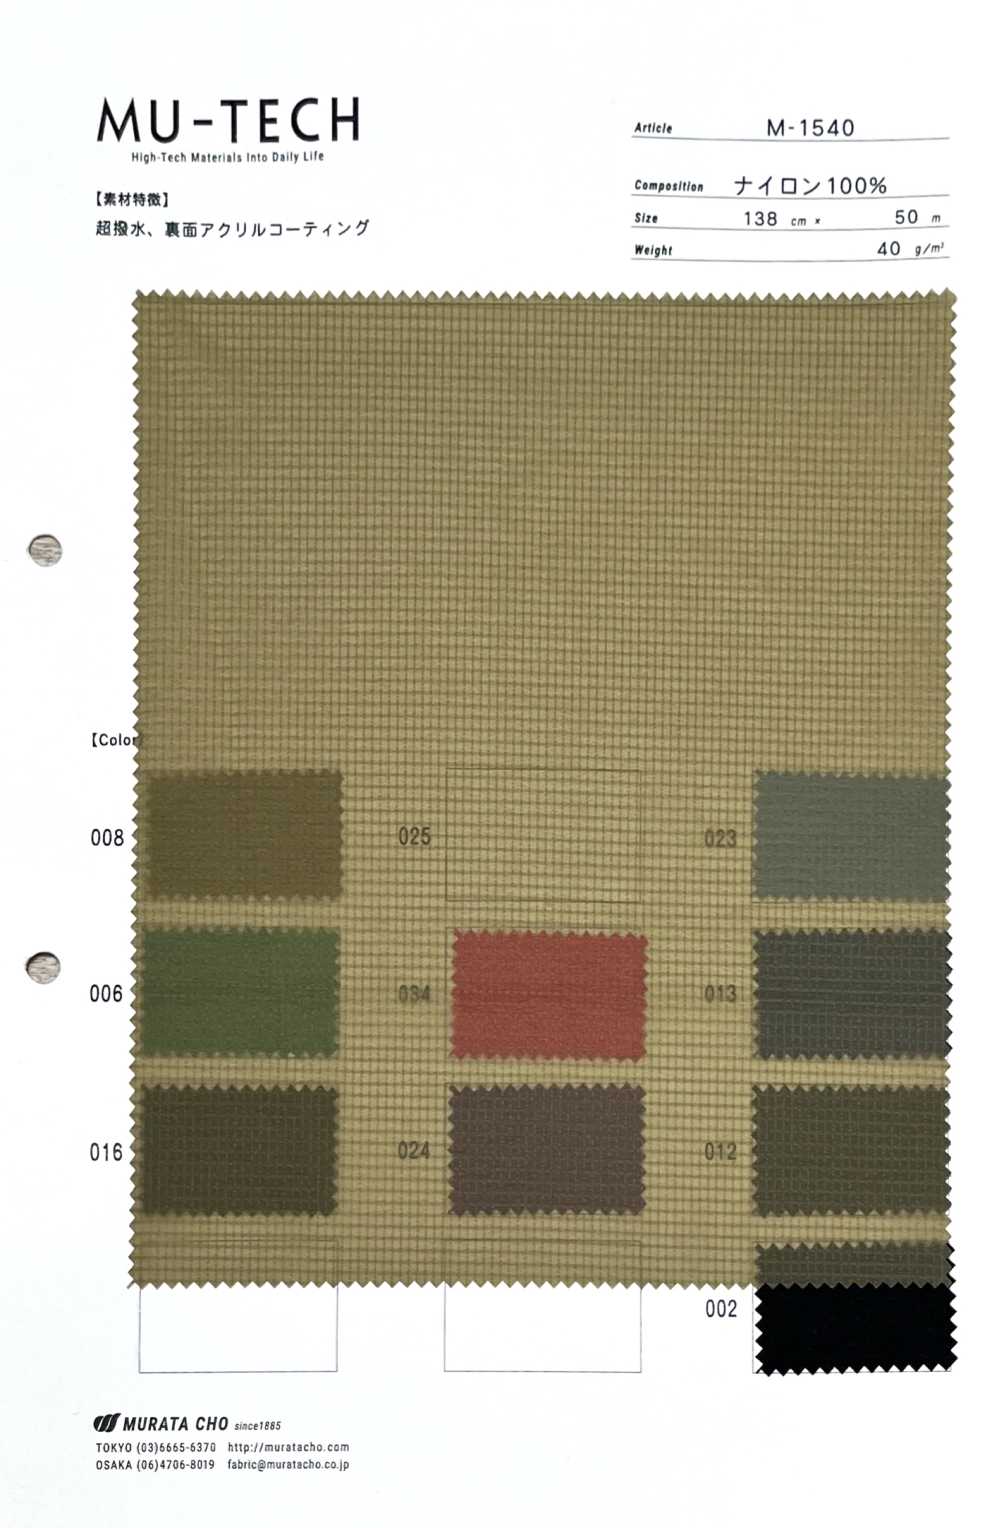 M-1540 Lớp Phủ Acrylic Chống Thấm Nước Mini Vải Ripstop Nylon Nhẹ Bền Mặt Sau Trưởng Murata